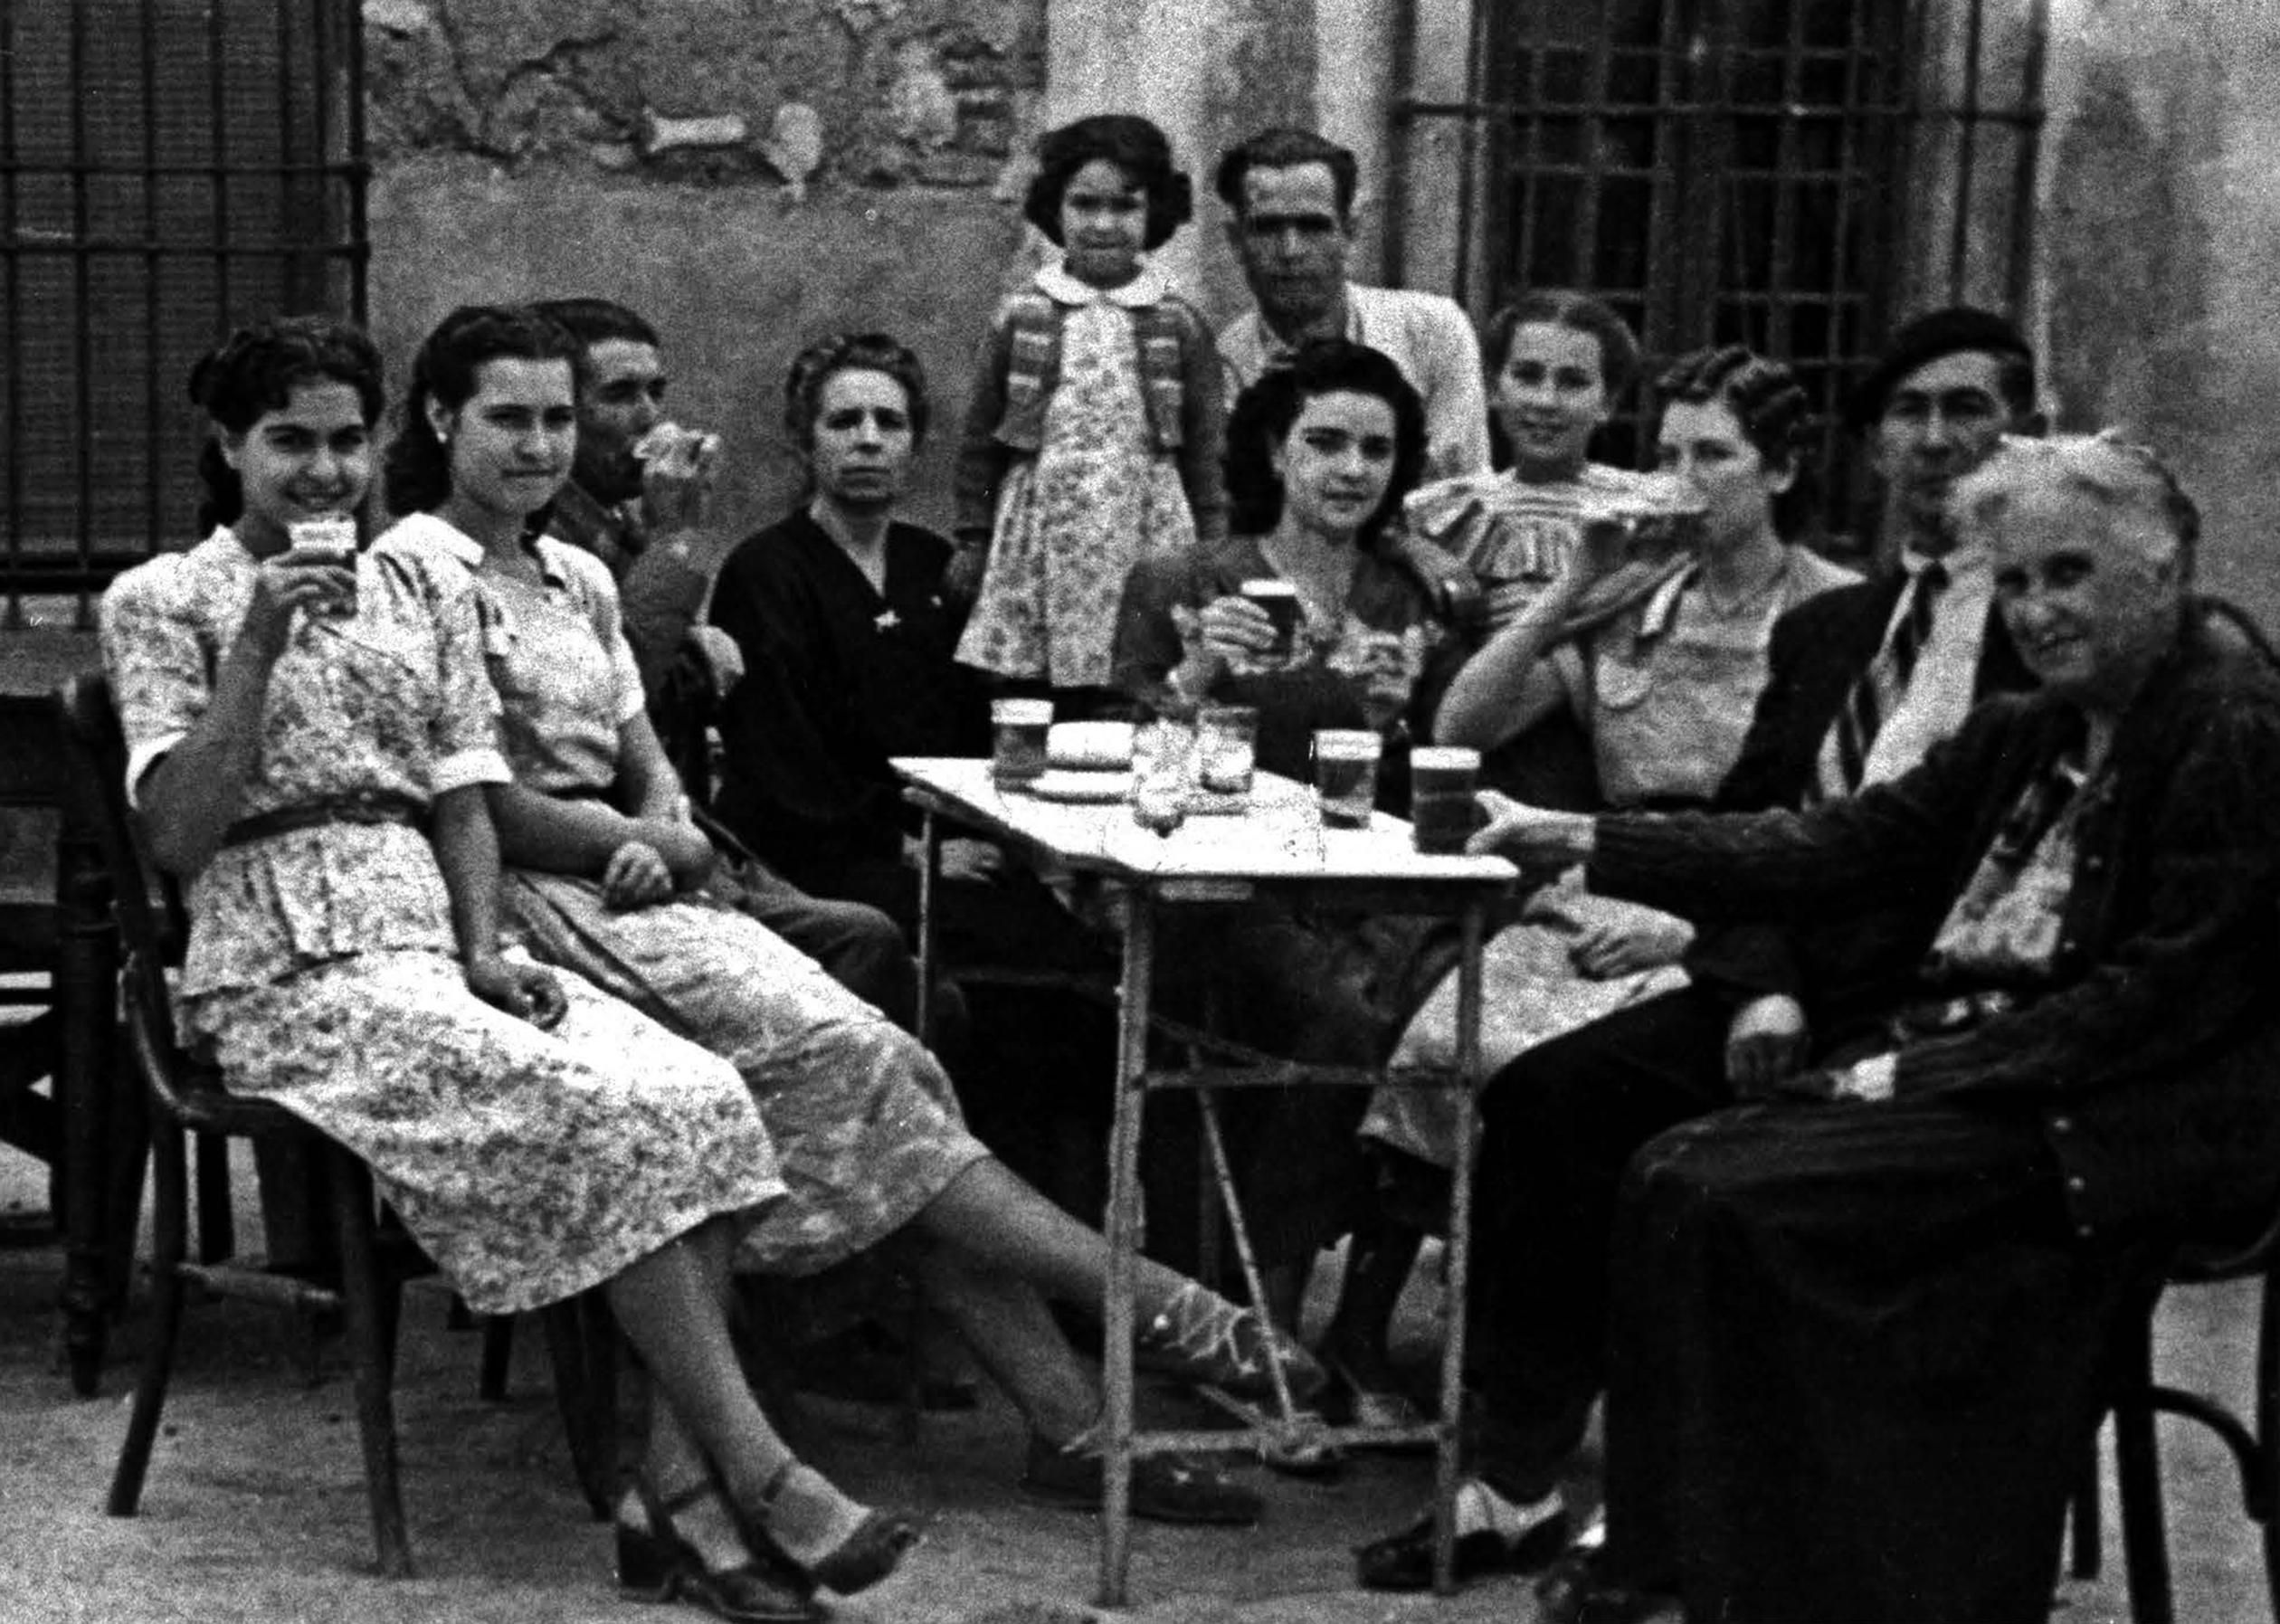 Mujeres y hombres sentados en la calle bebiendo cerveza